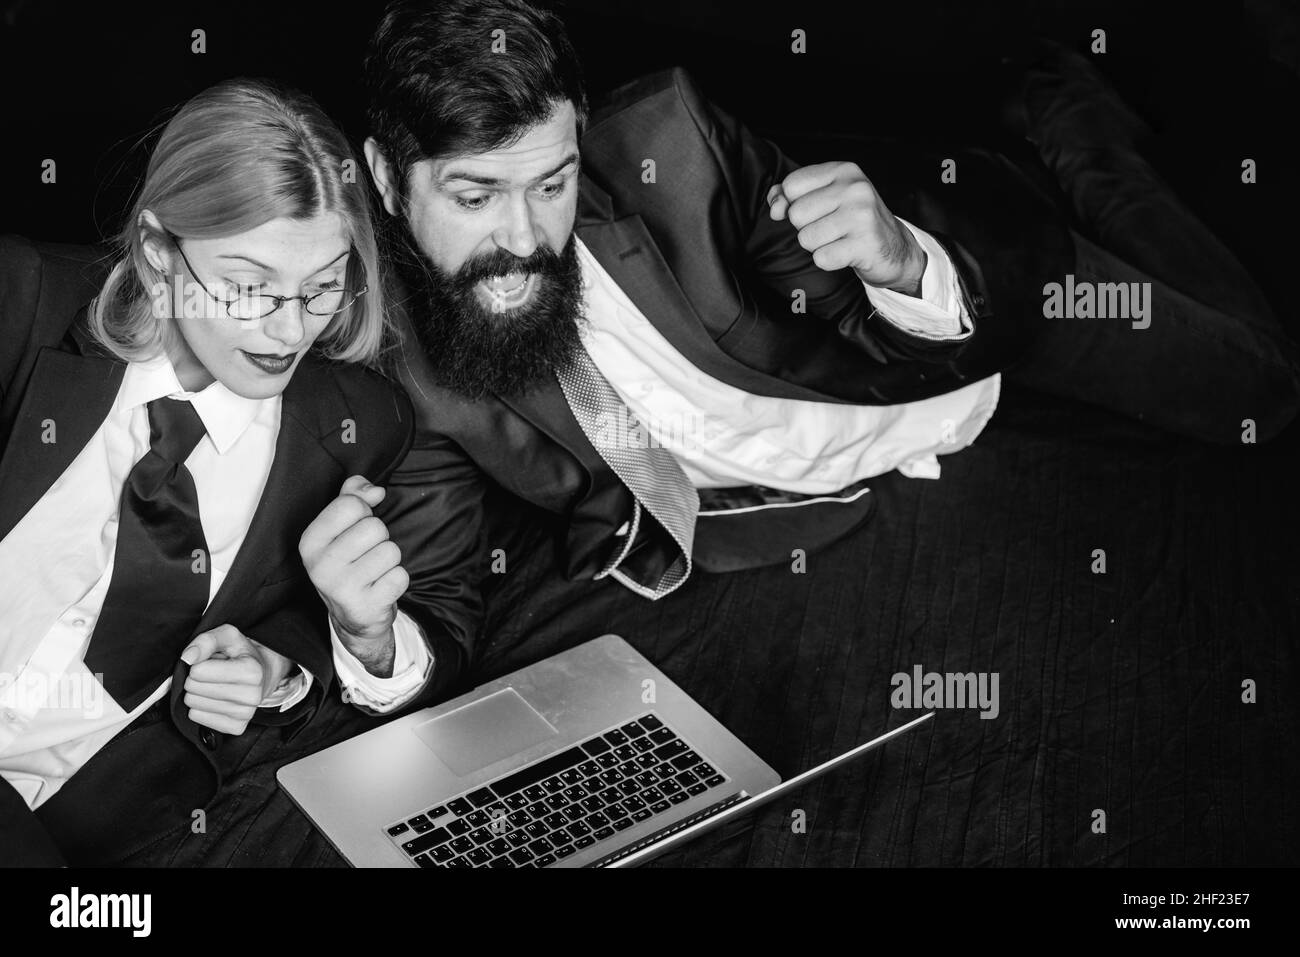 Portrait de deux professionnels enthousiastes regardant un écran d'ordinateur portable. Pirates utilisant des ordinateurs portables. Pirates informatiques dans l'obscurité. Banque D'Images